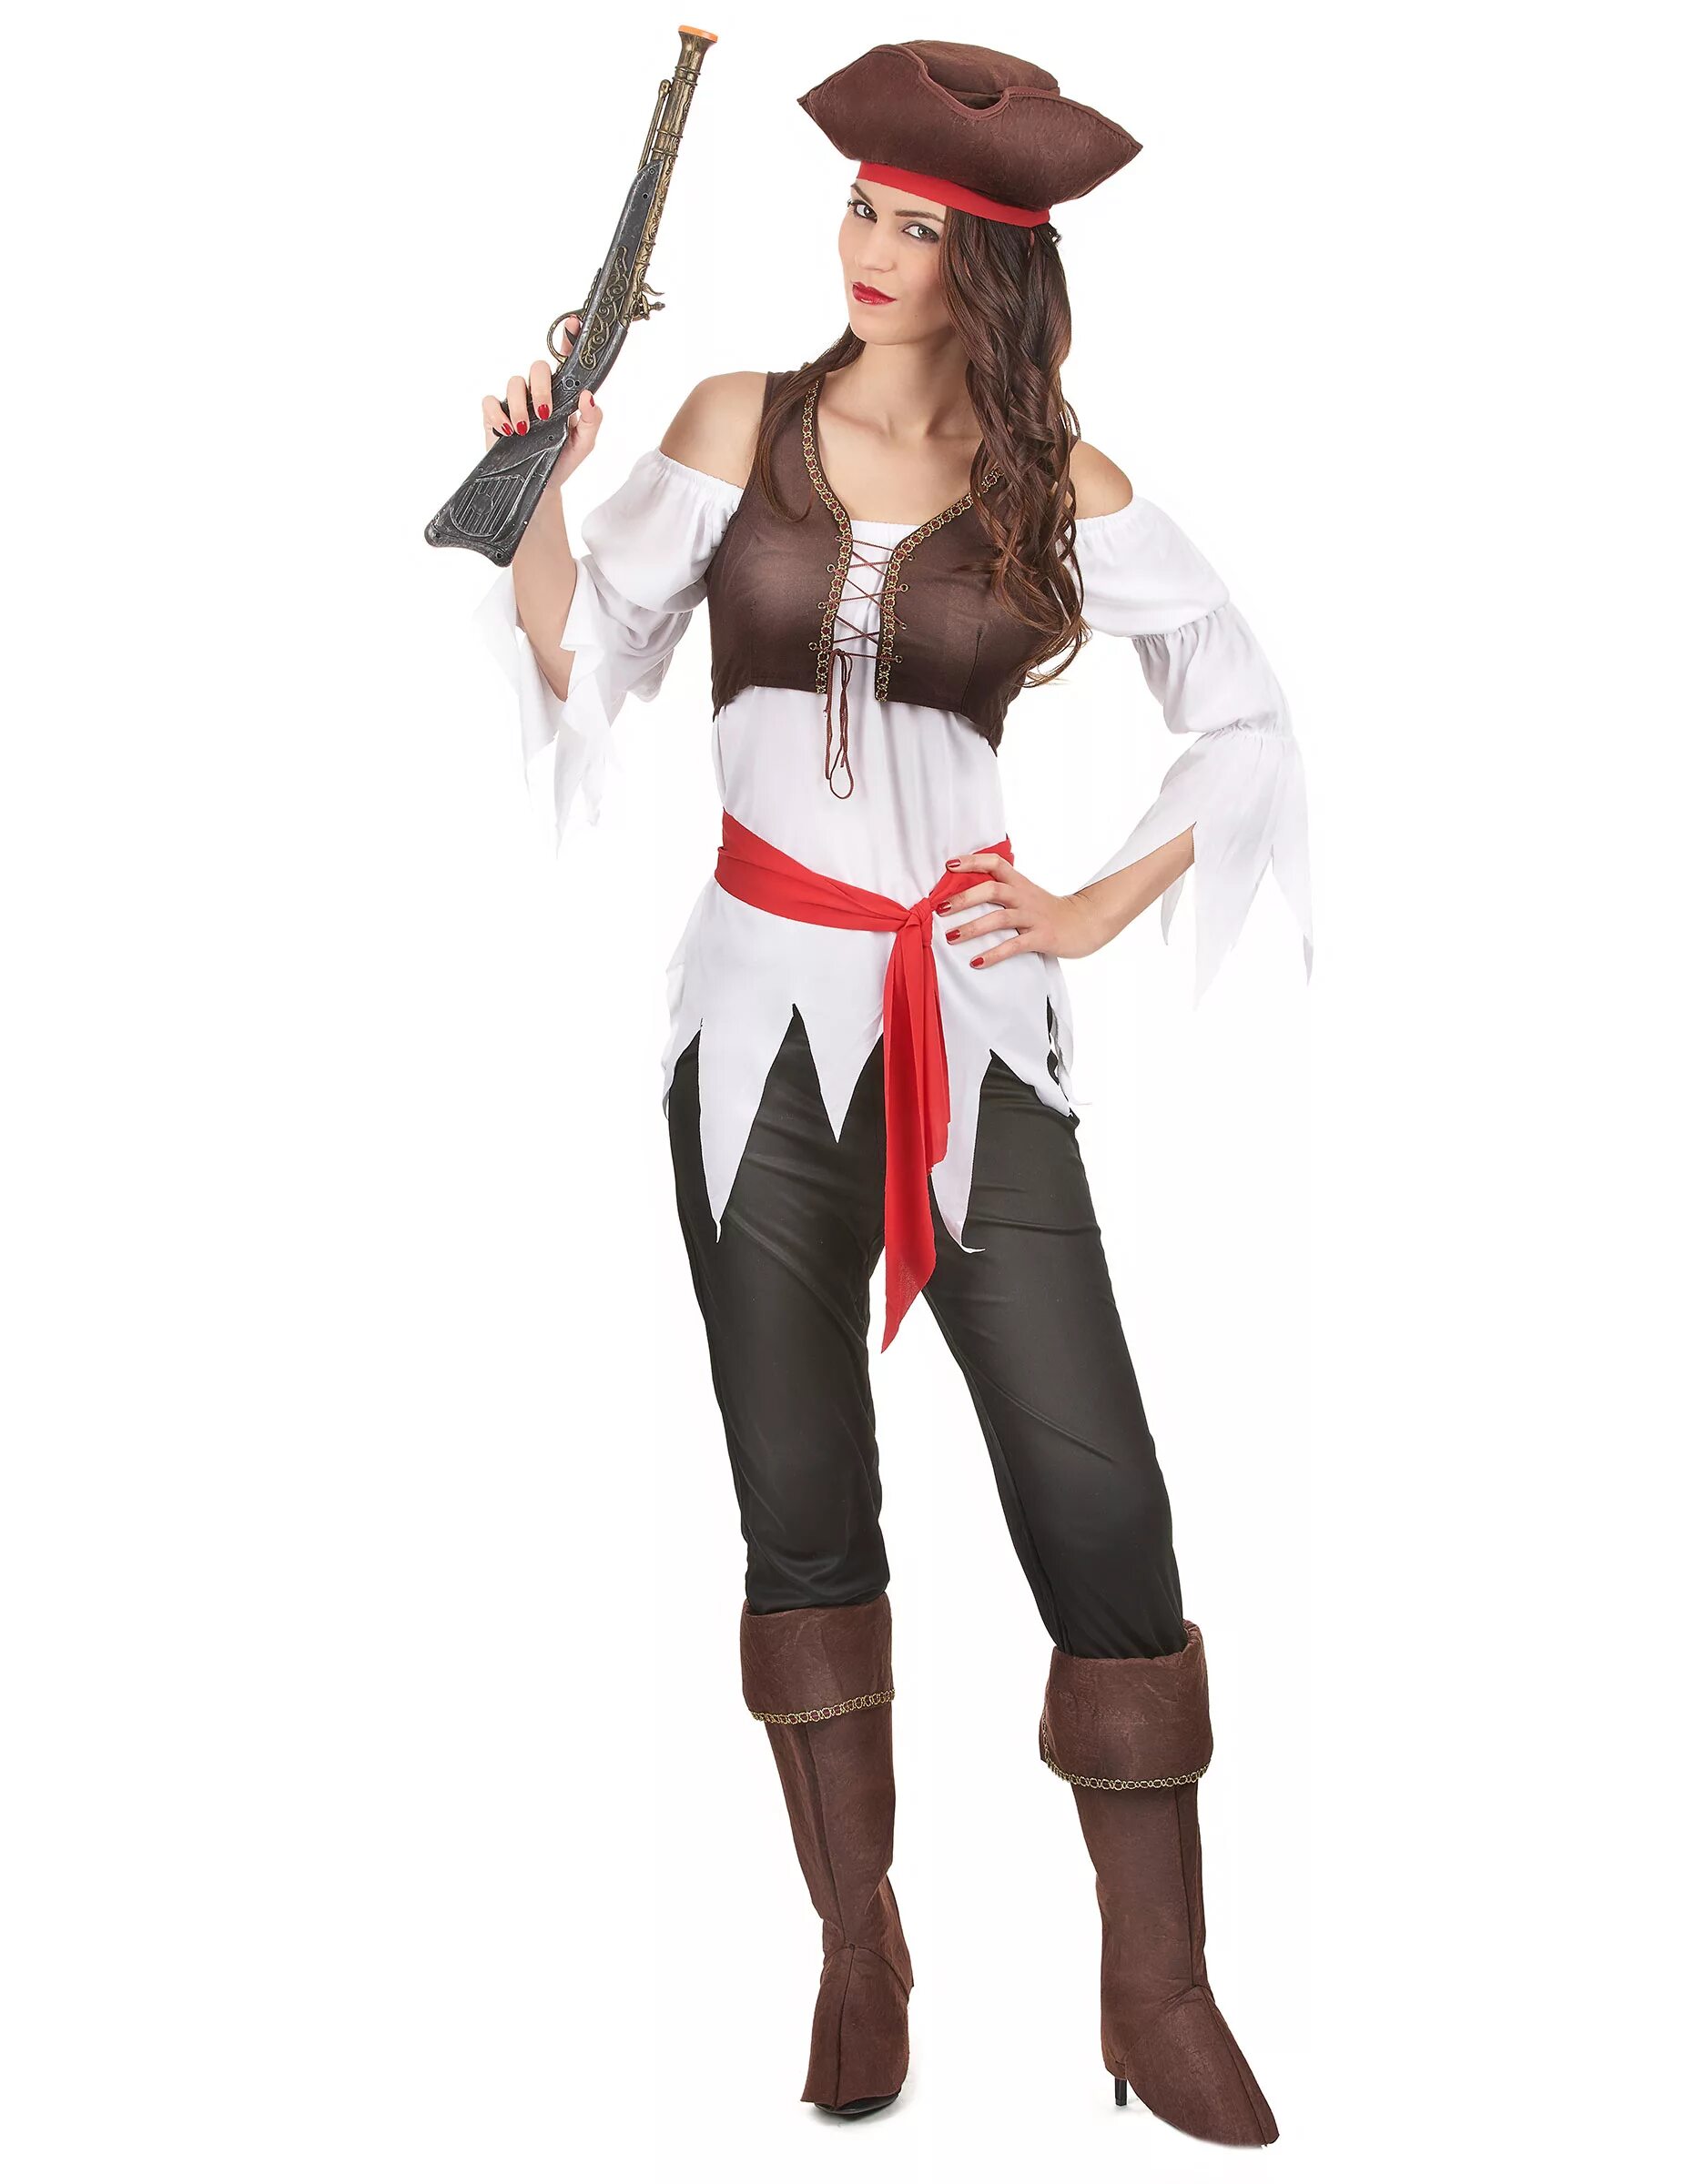 Девушка пиратка. Женский костюм пирата. Костюм пирата для женщины. Пиратский костюм для девушки. Пиратский образ для девушки.